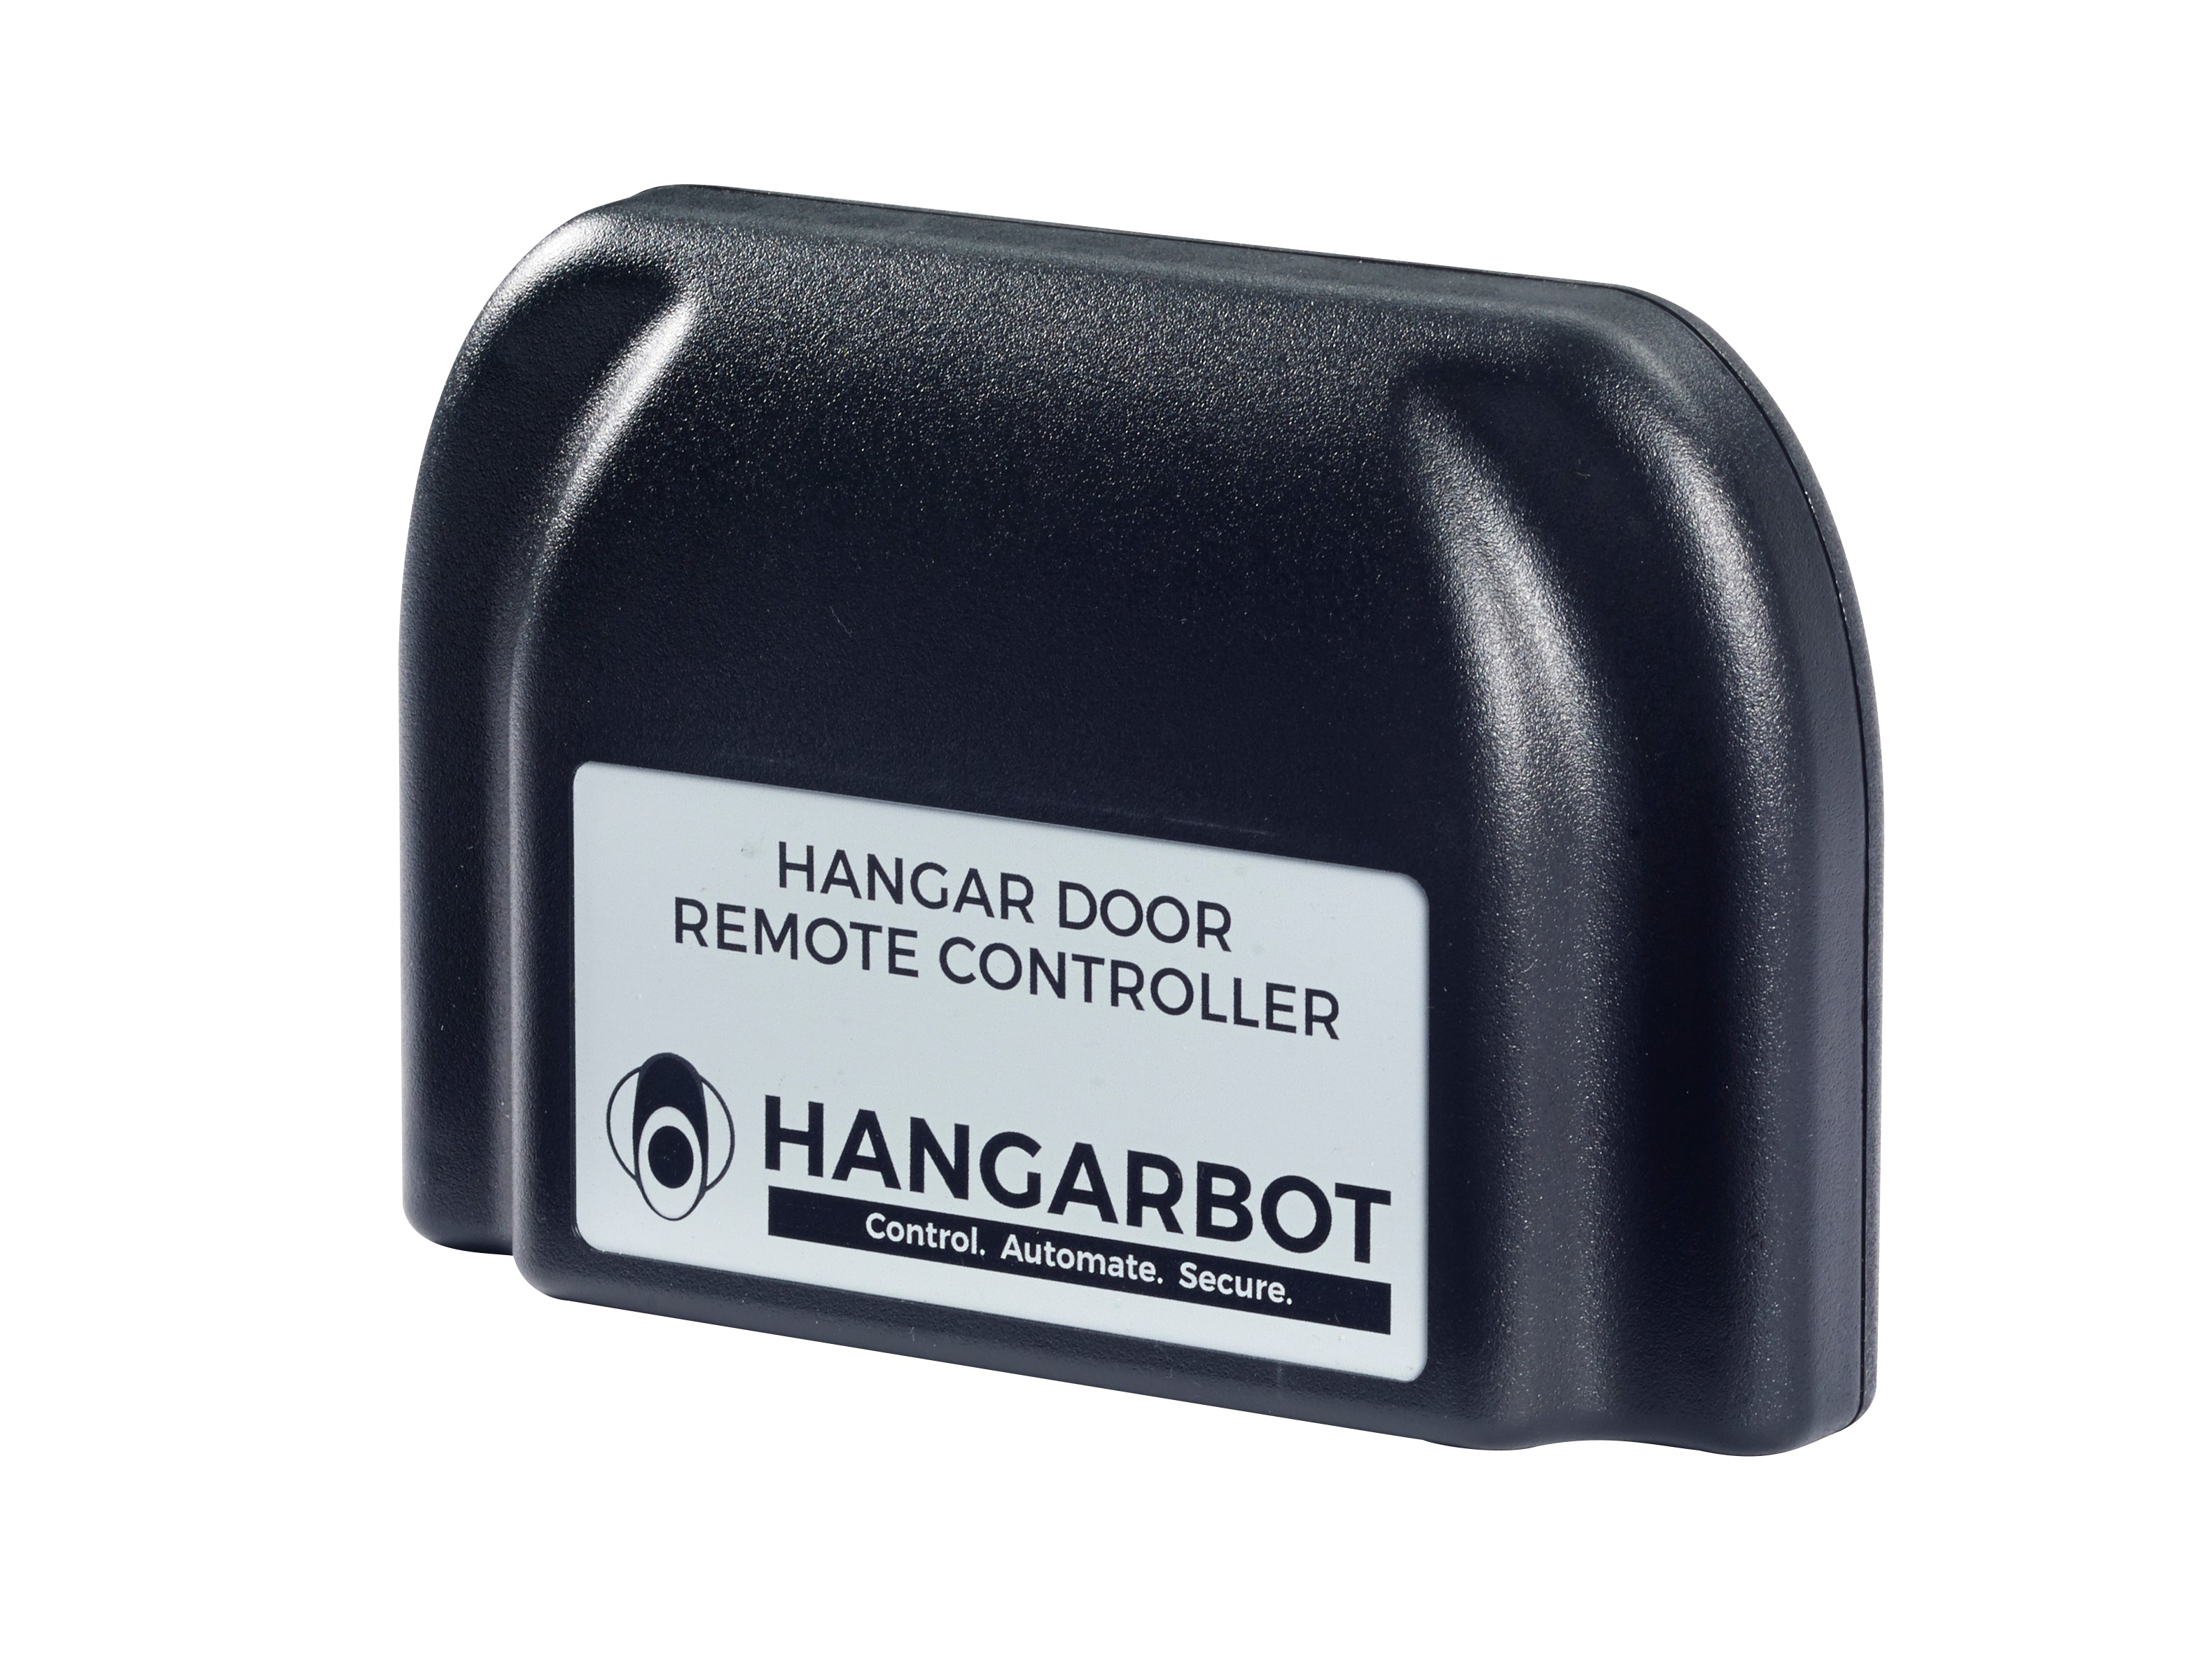 HangarBot Hangar Door Remote Controller, HangarBot Smart Hangar Door Remote Control